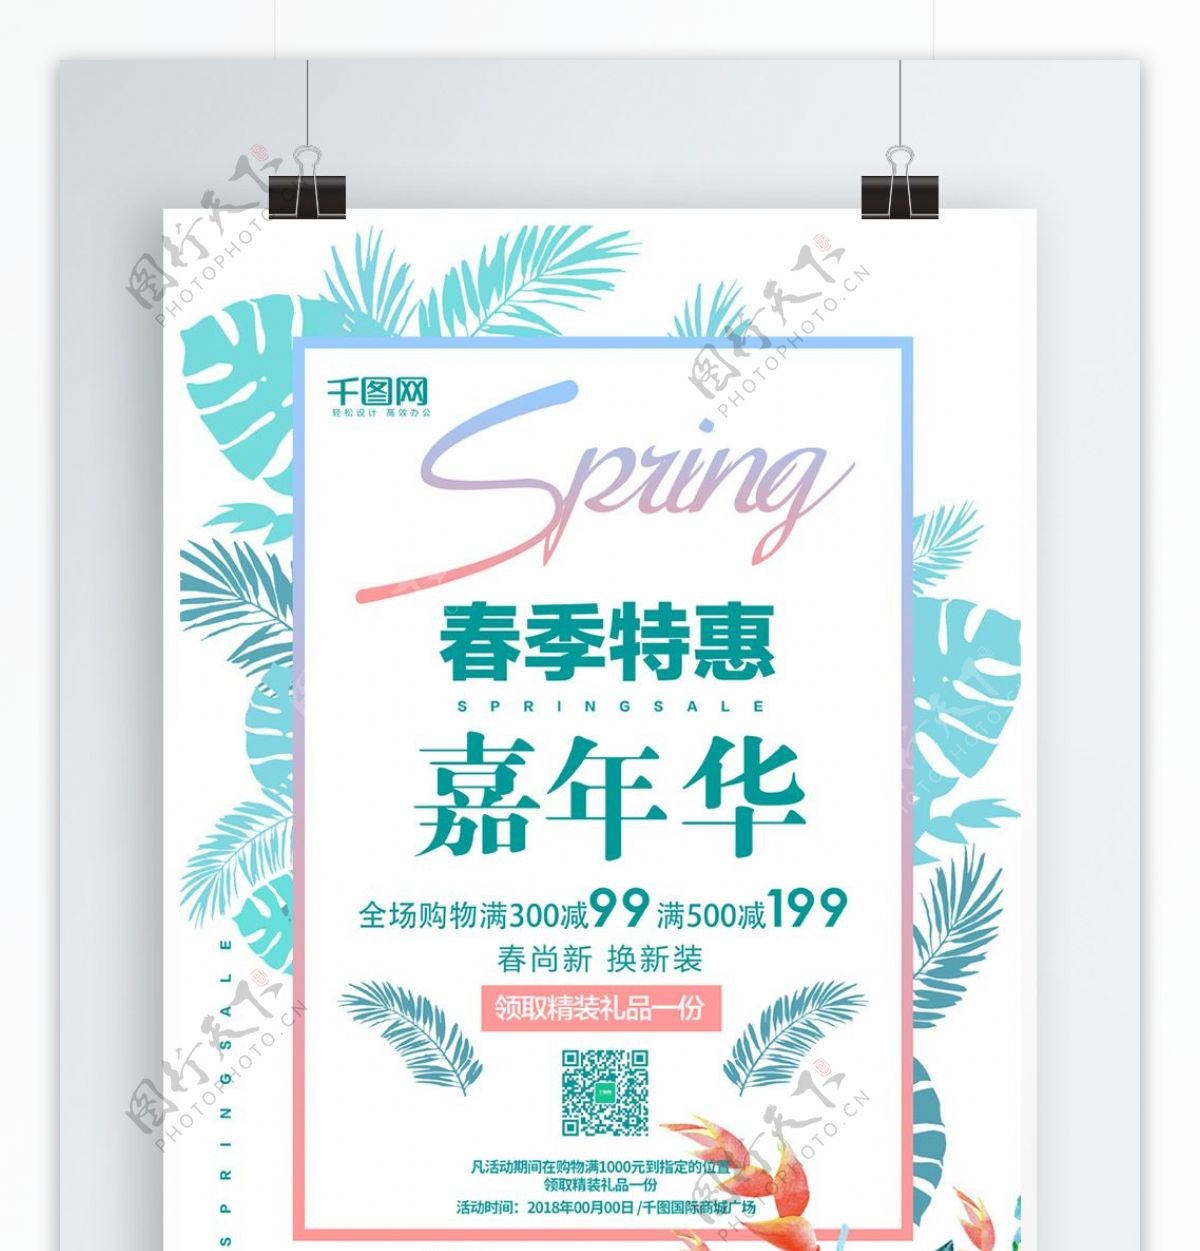 清新蓝绿色春季特惠嘉年华促销海报